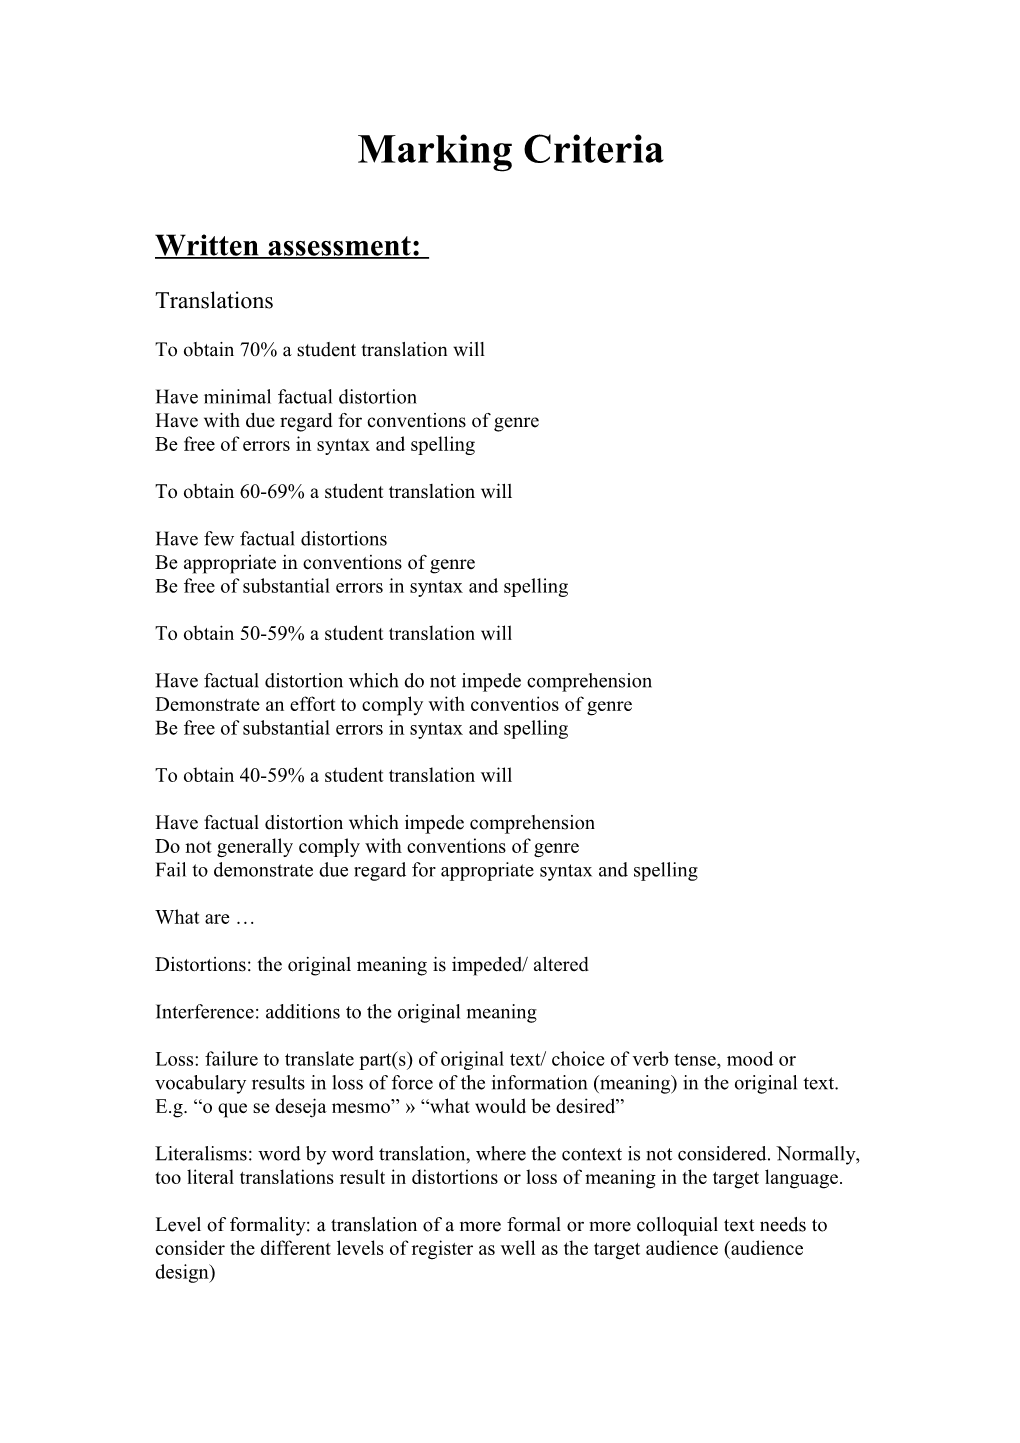 Written Assessment